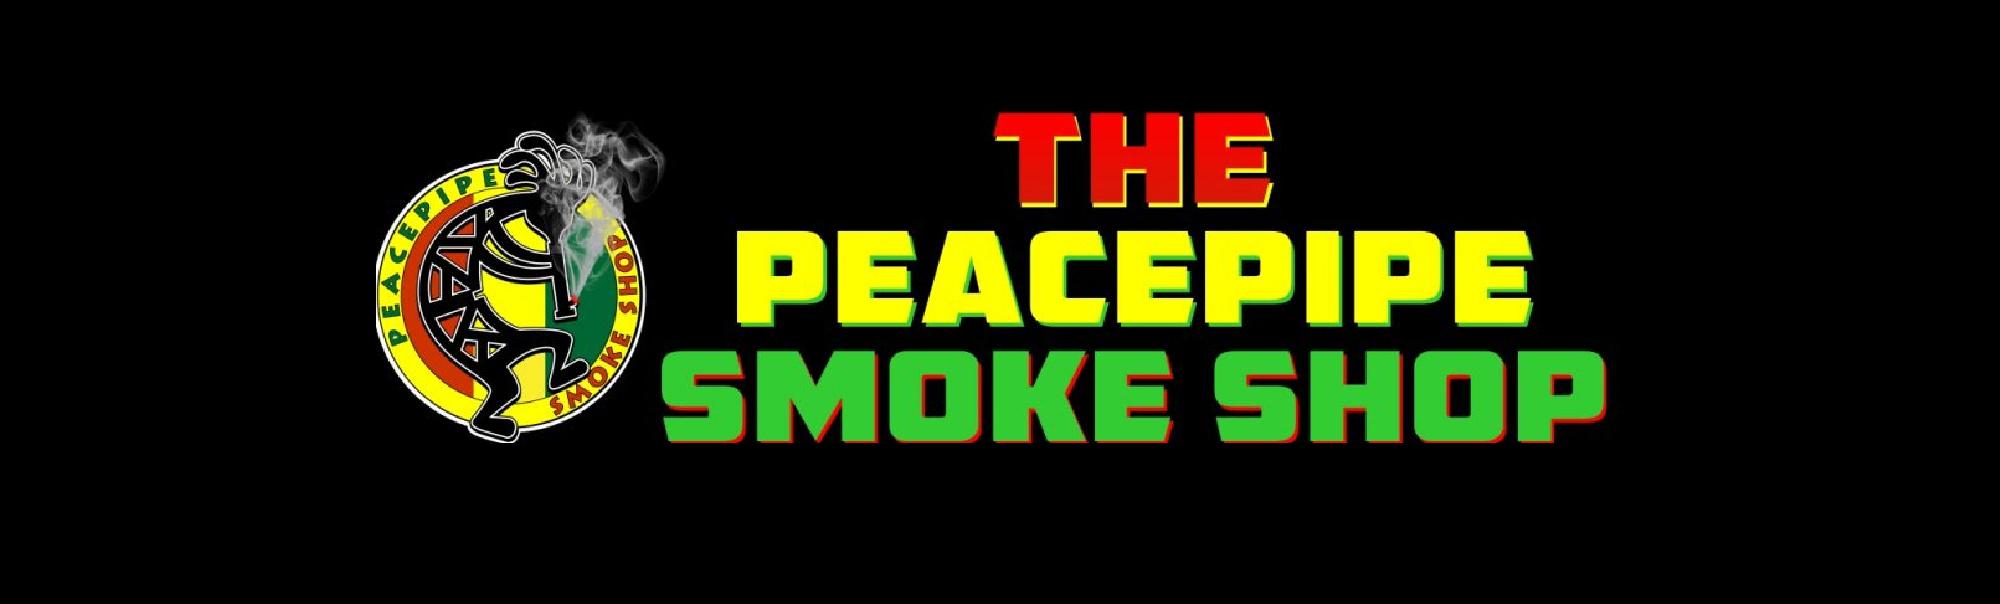 image of peacepipe smoke shop in santa rosa ca